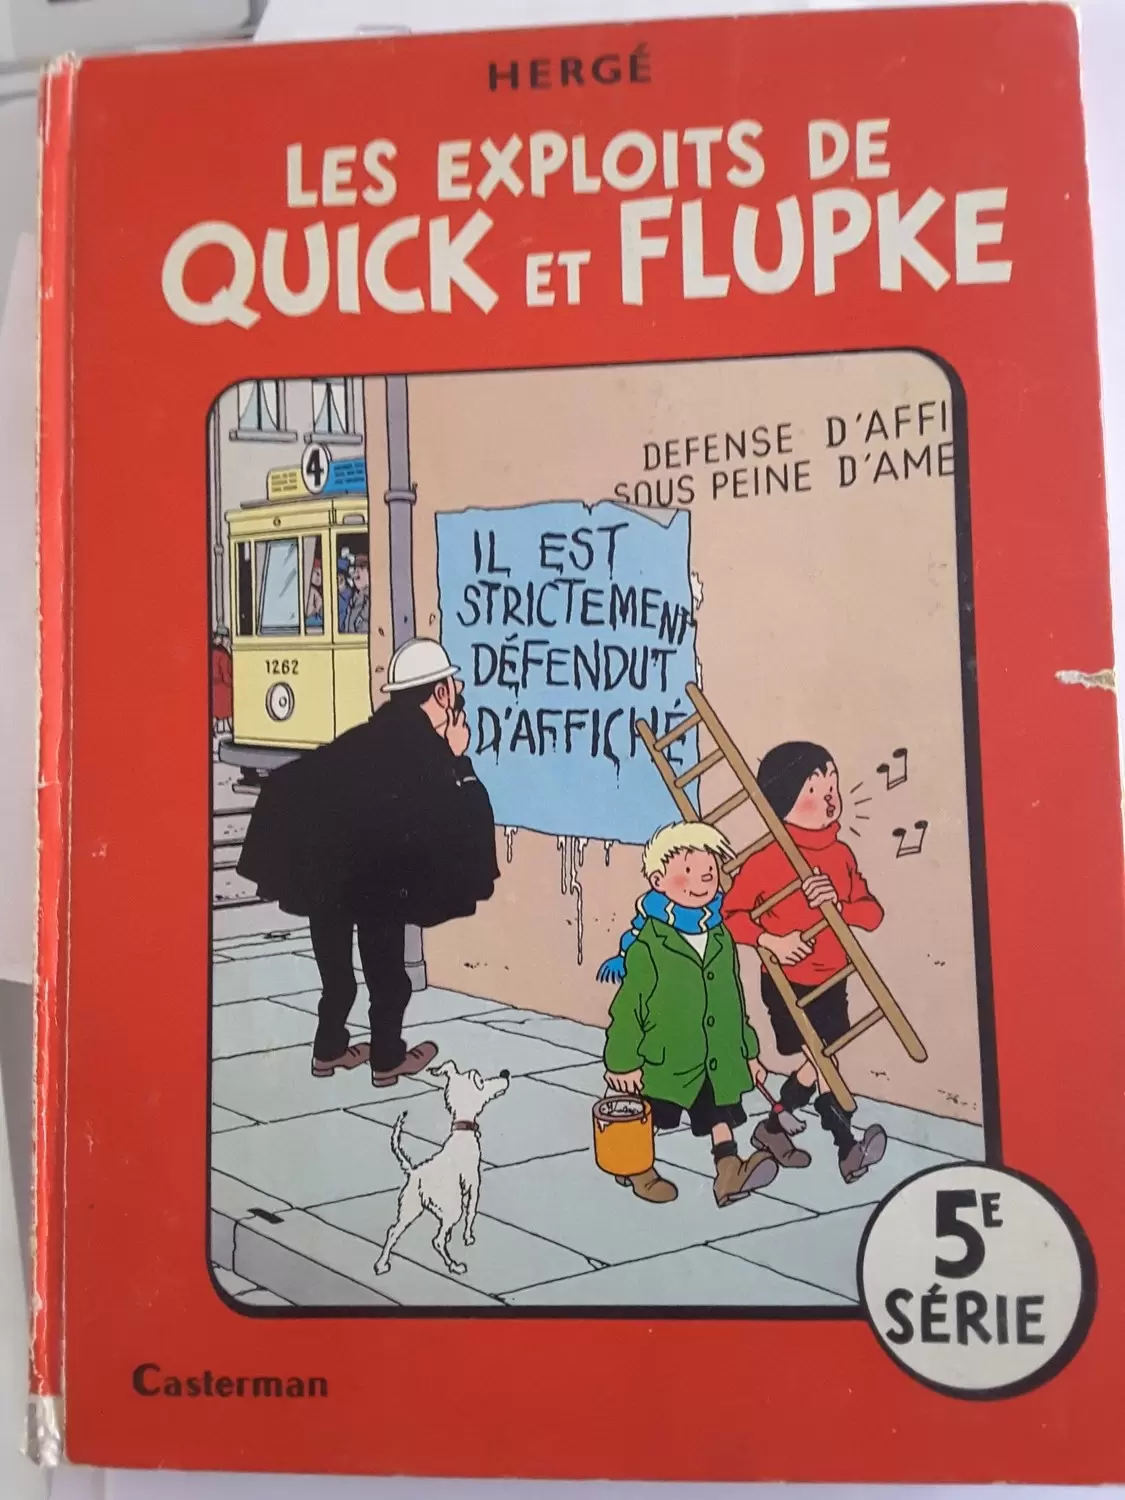 Quick & Flupke - Les exploits de Quick et Flupke 5ème série